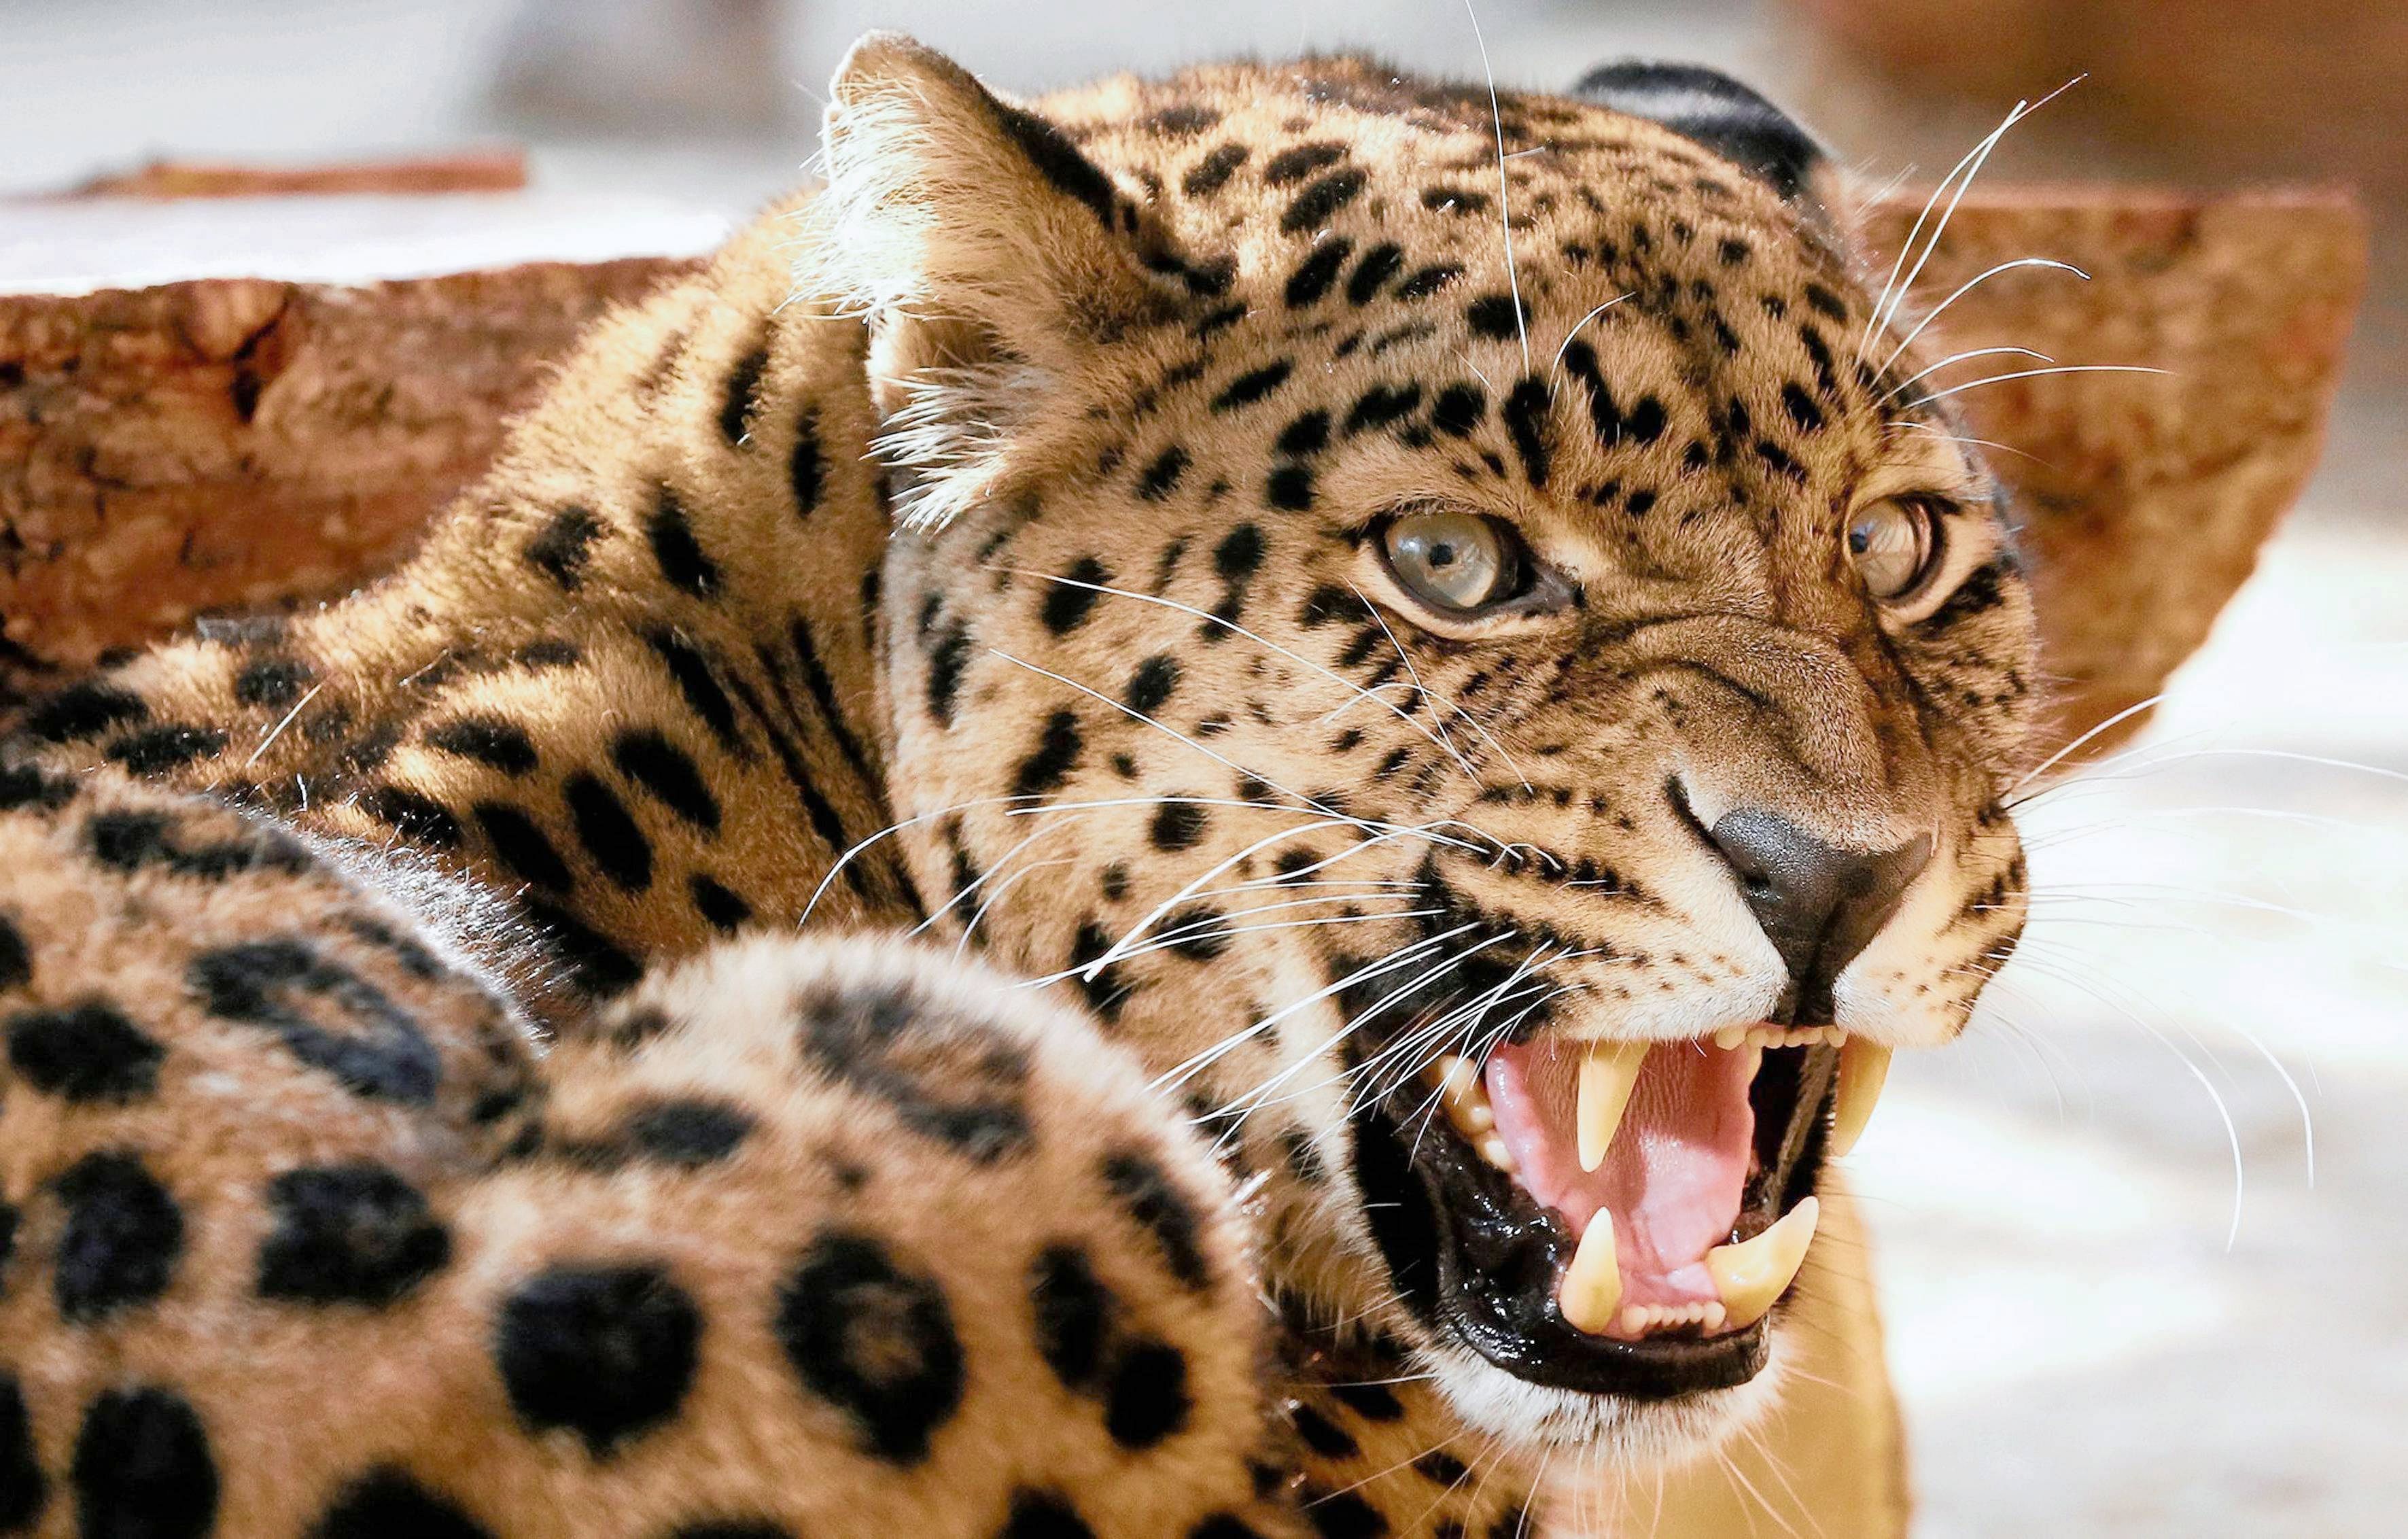 leopard porcupine fight video gone viral